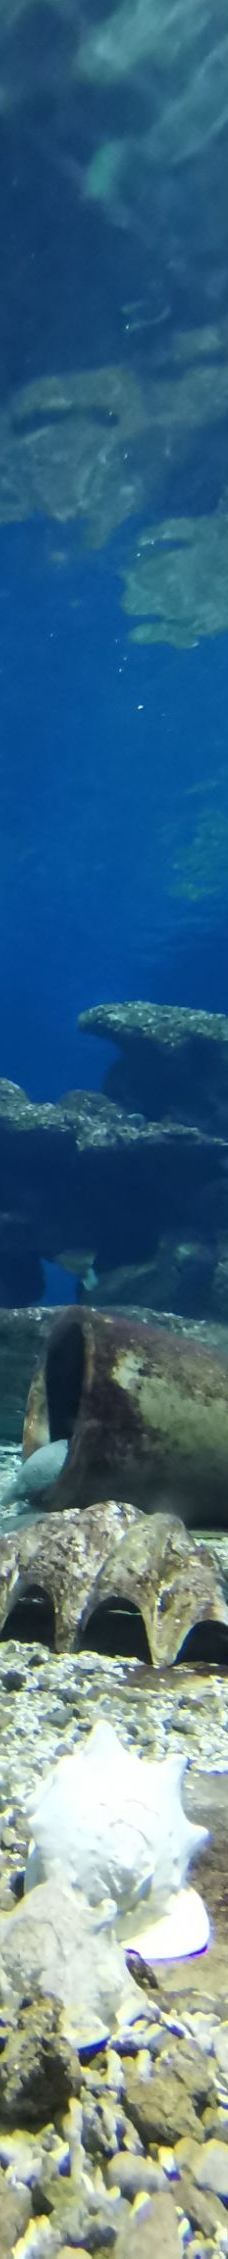 新澳海底世界-秦皇岛